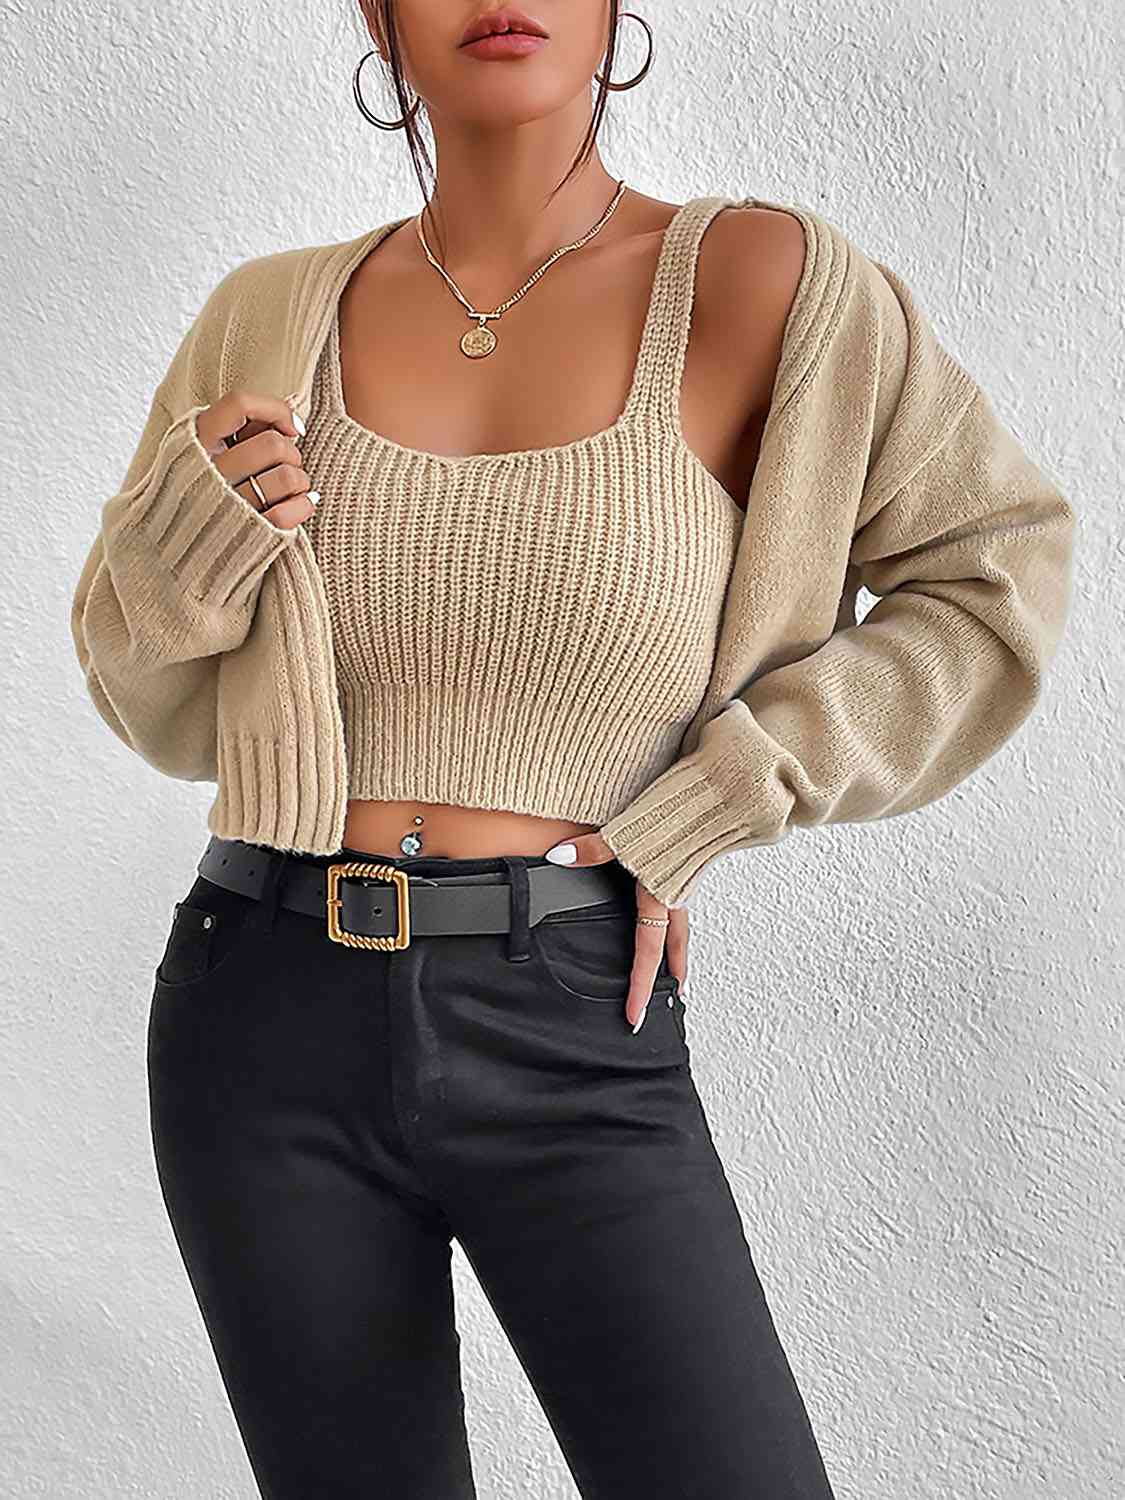 Women's Plain Sweater Cami and Cardigan Set Tan